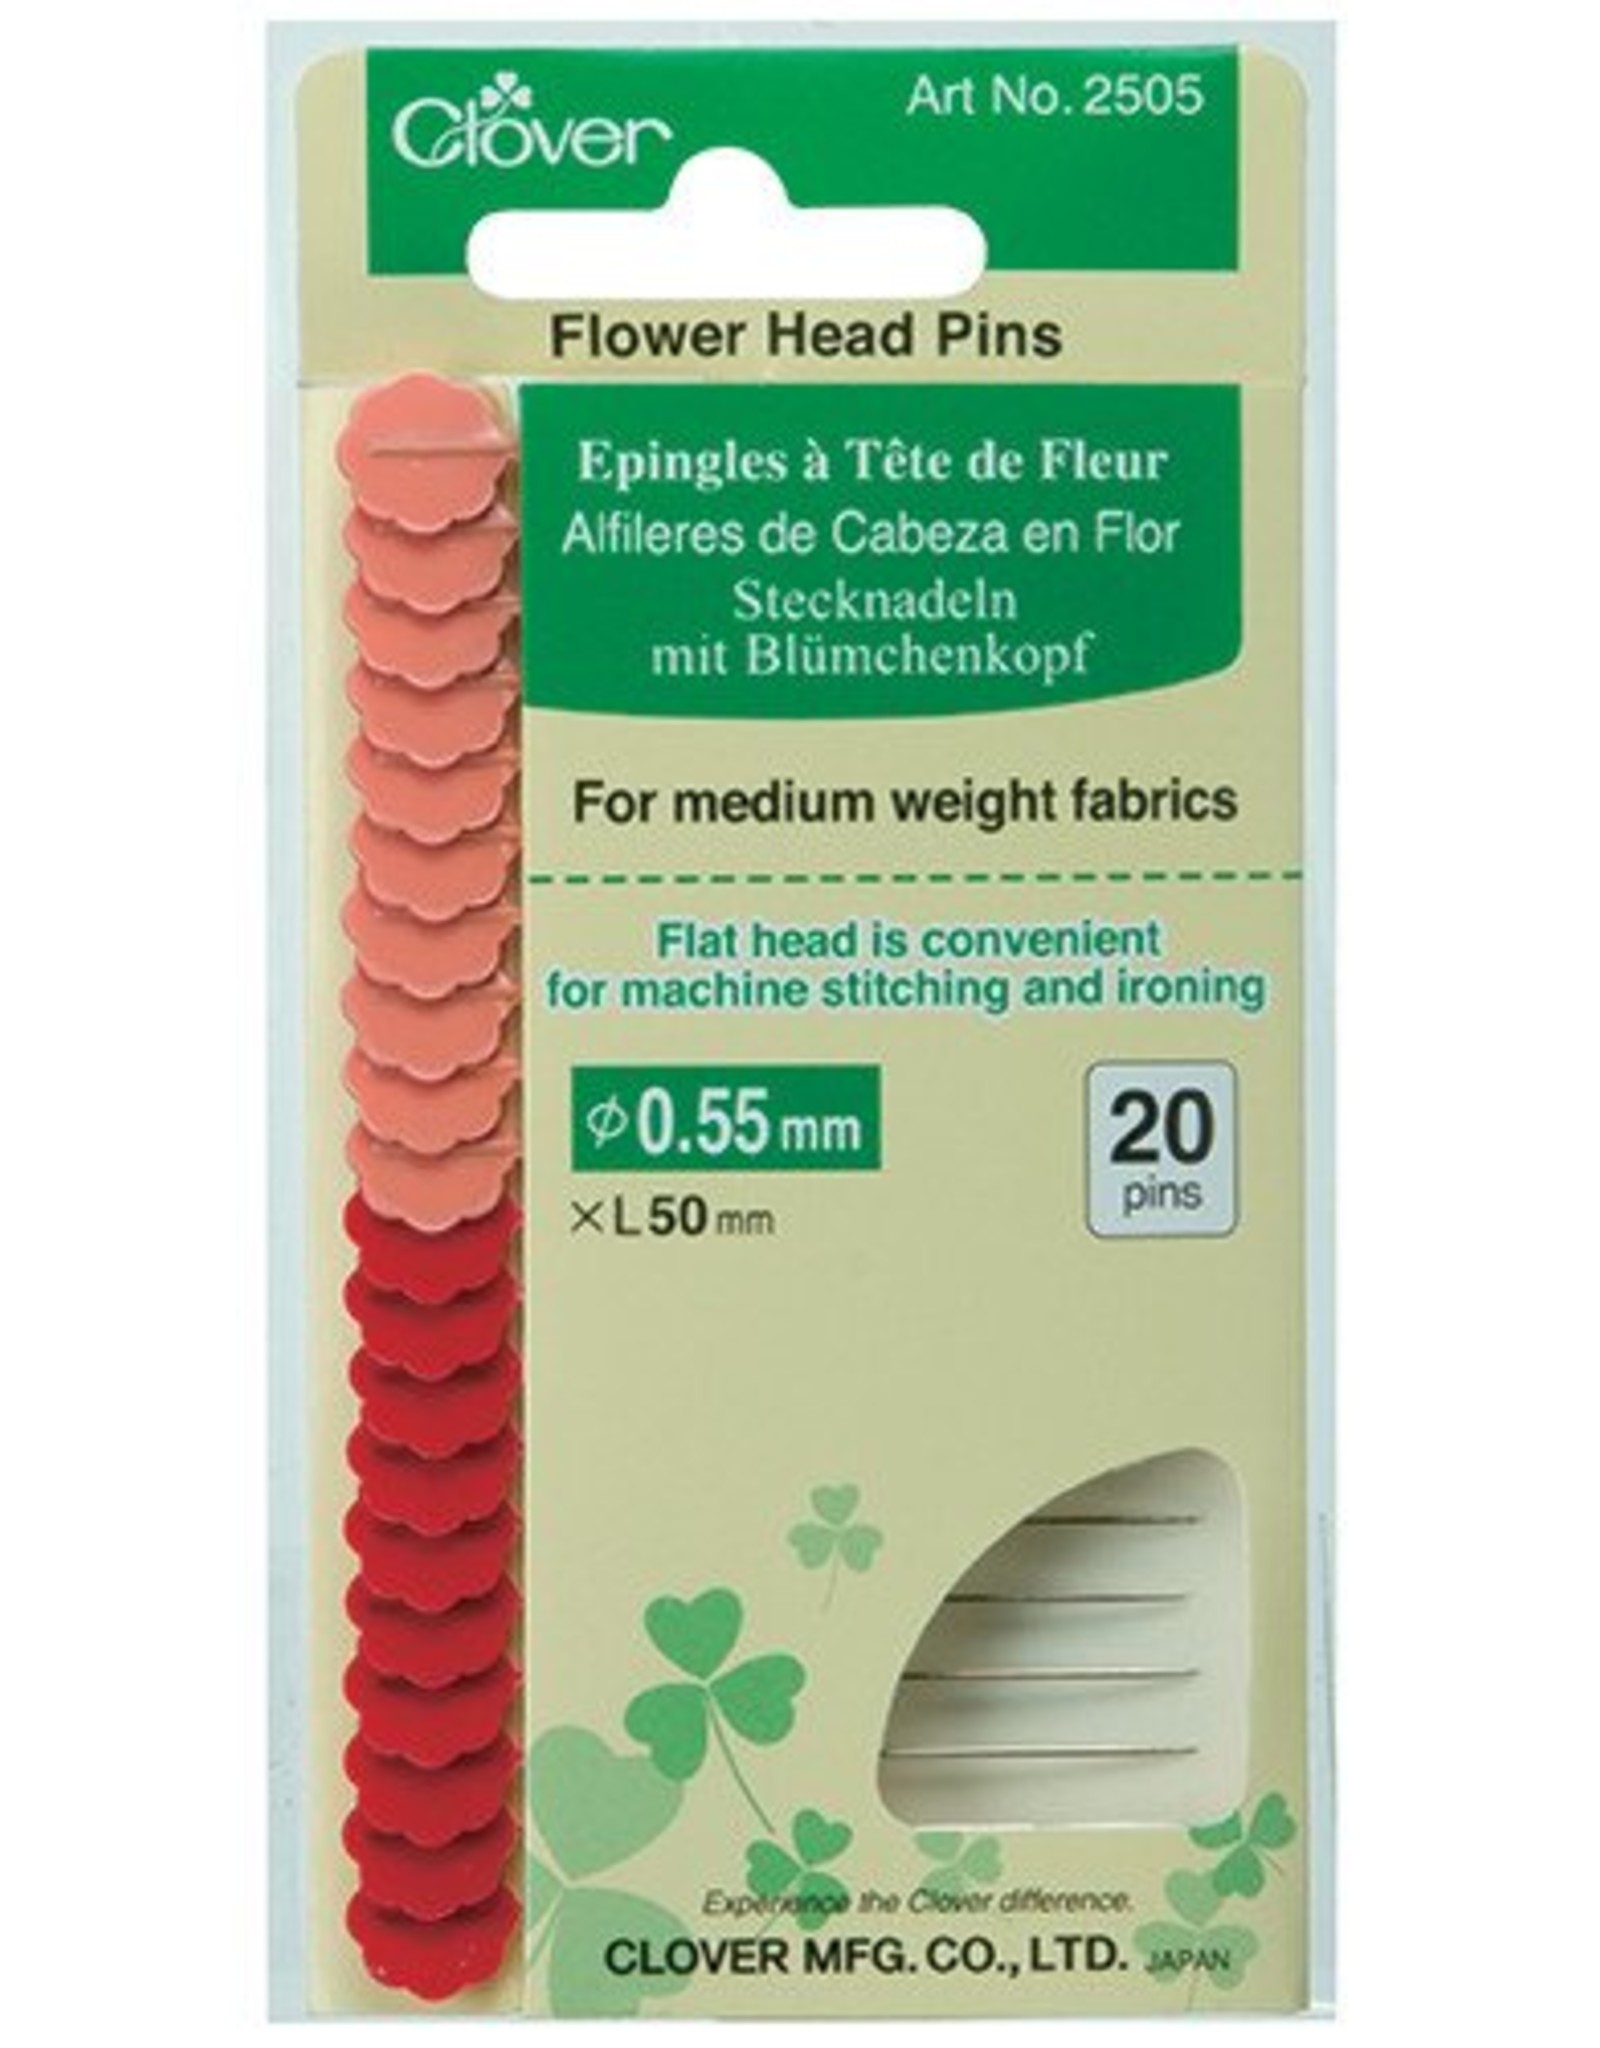 Clover Flower Head Pins - standard